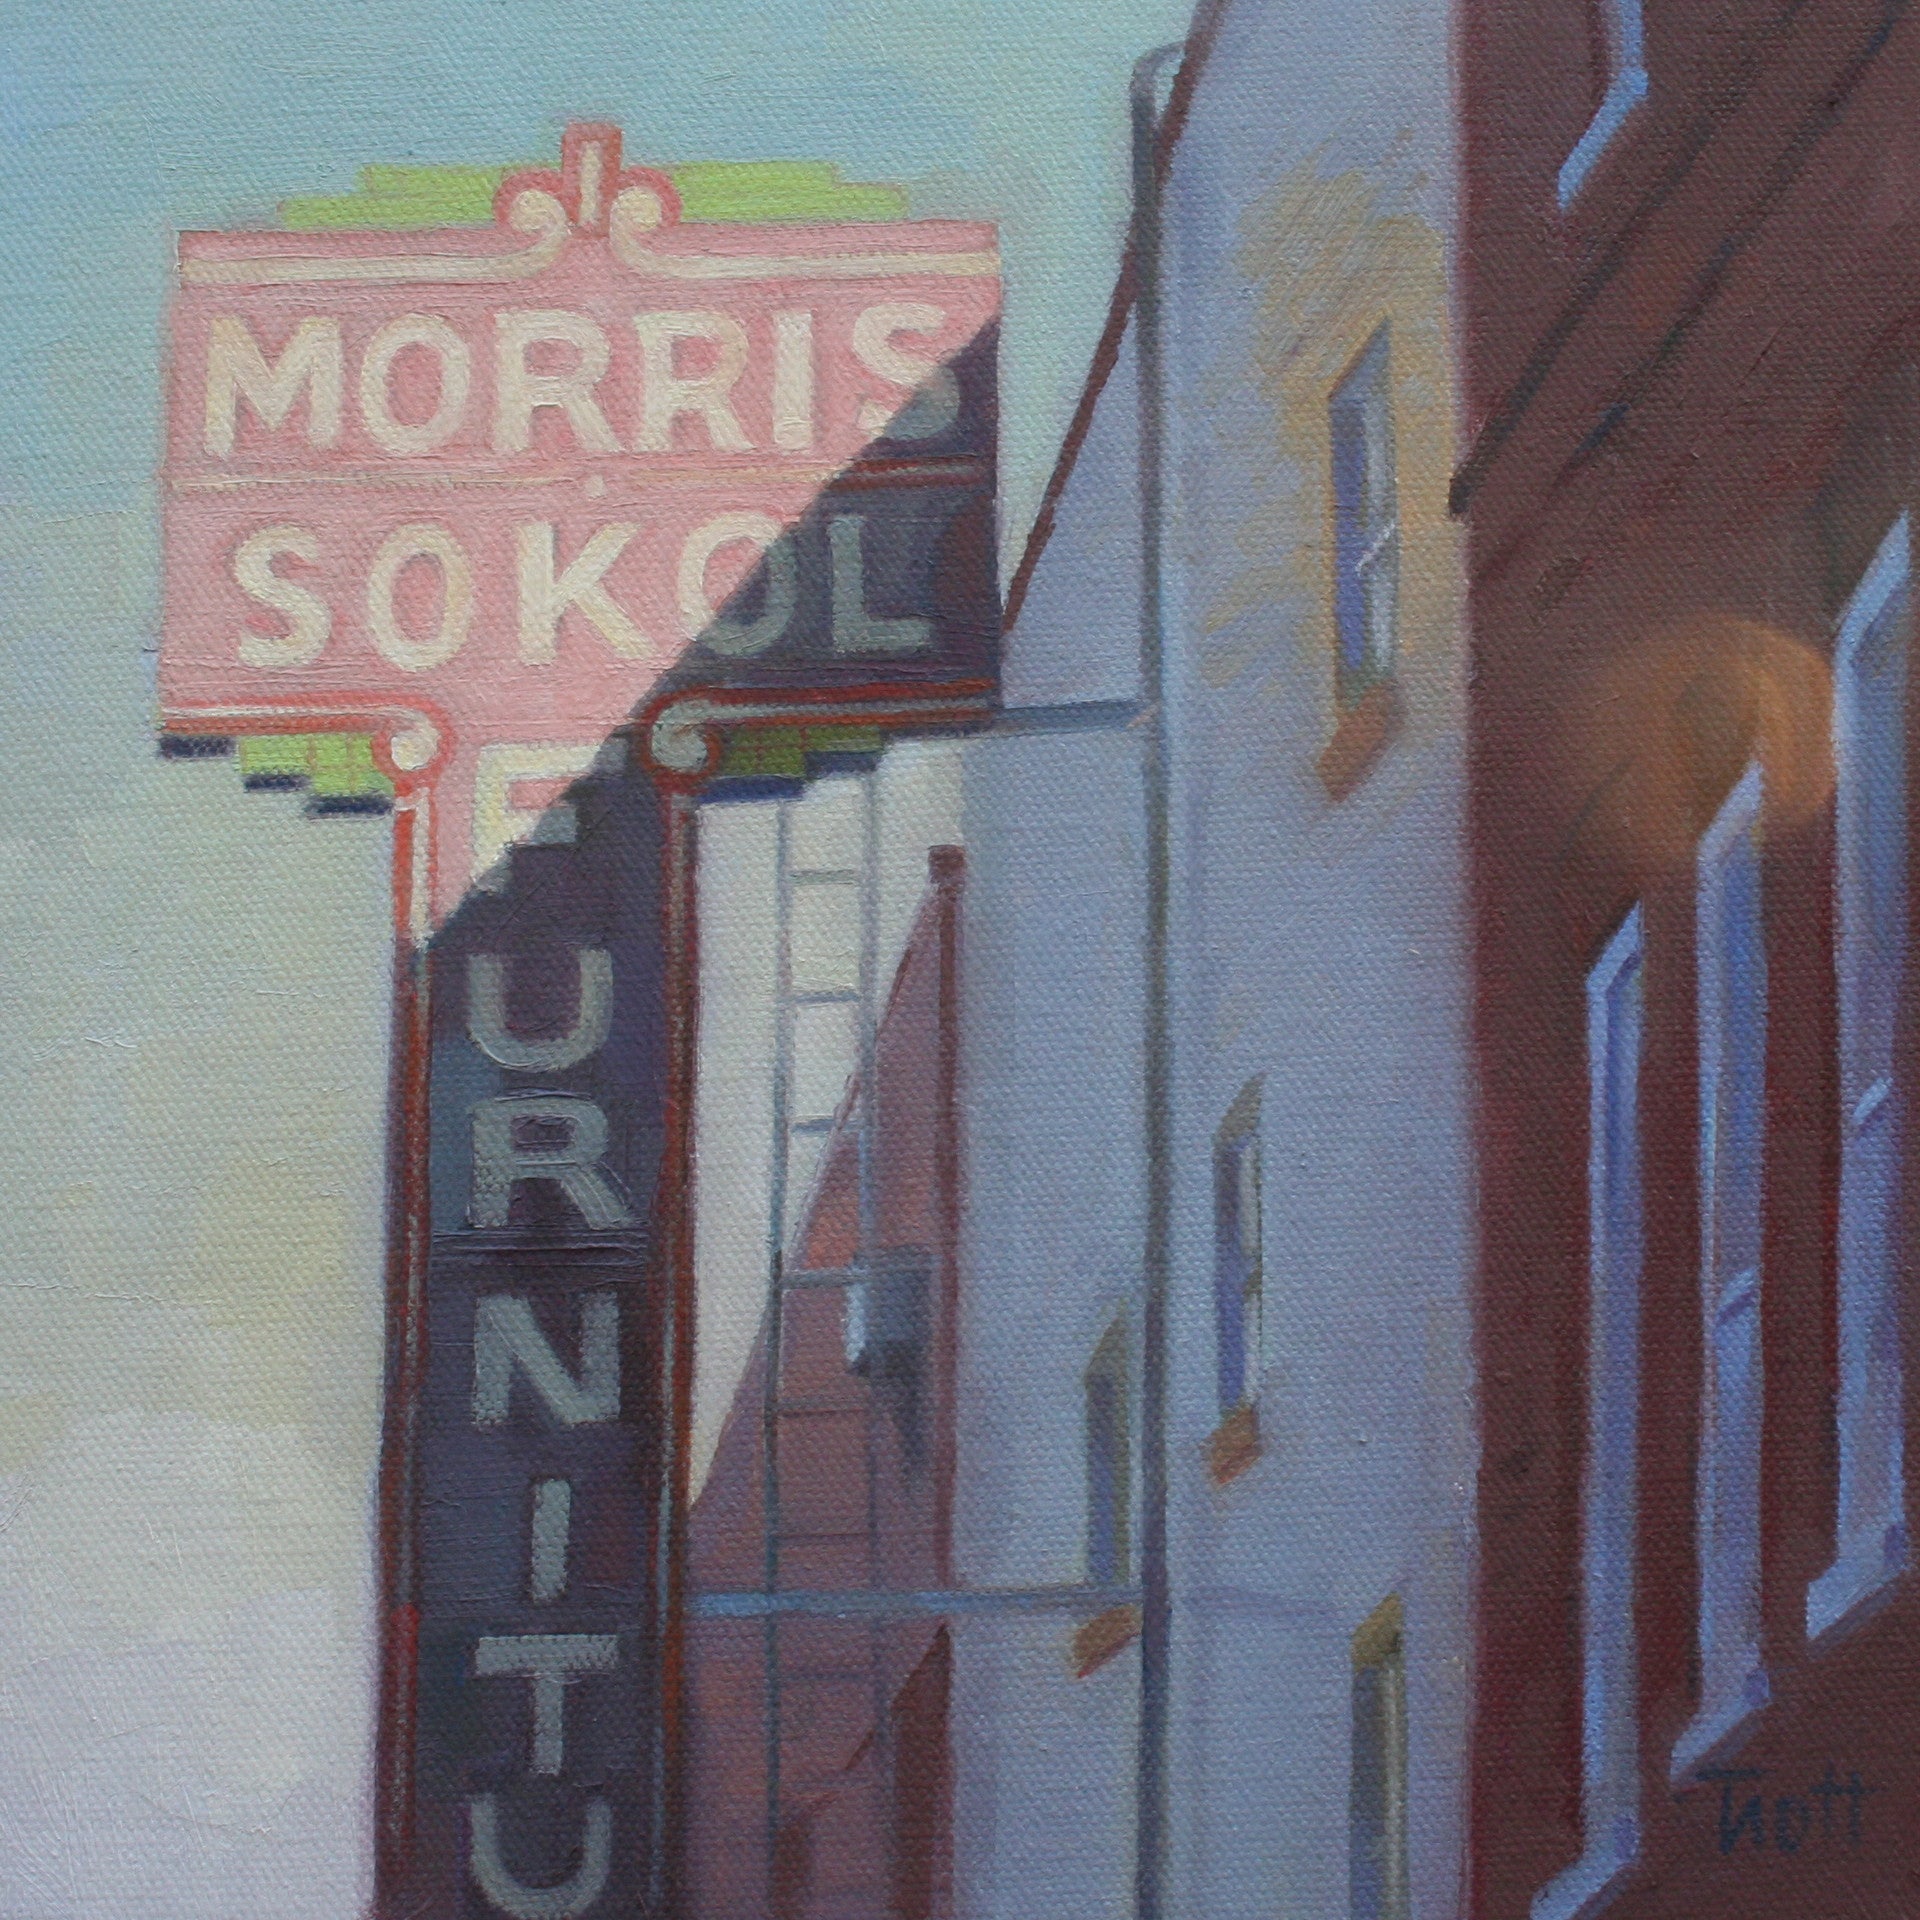 Morris Sokol Sign